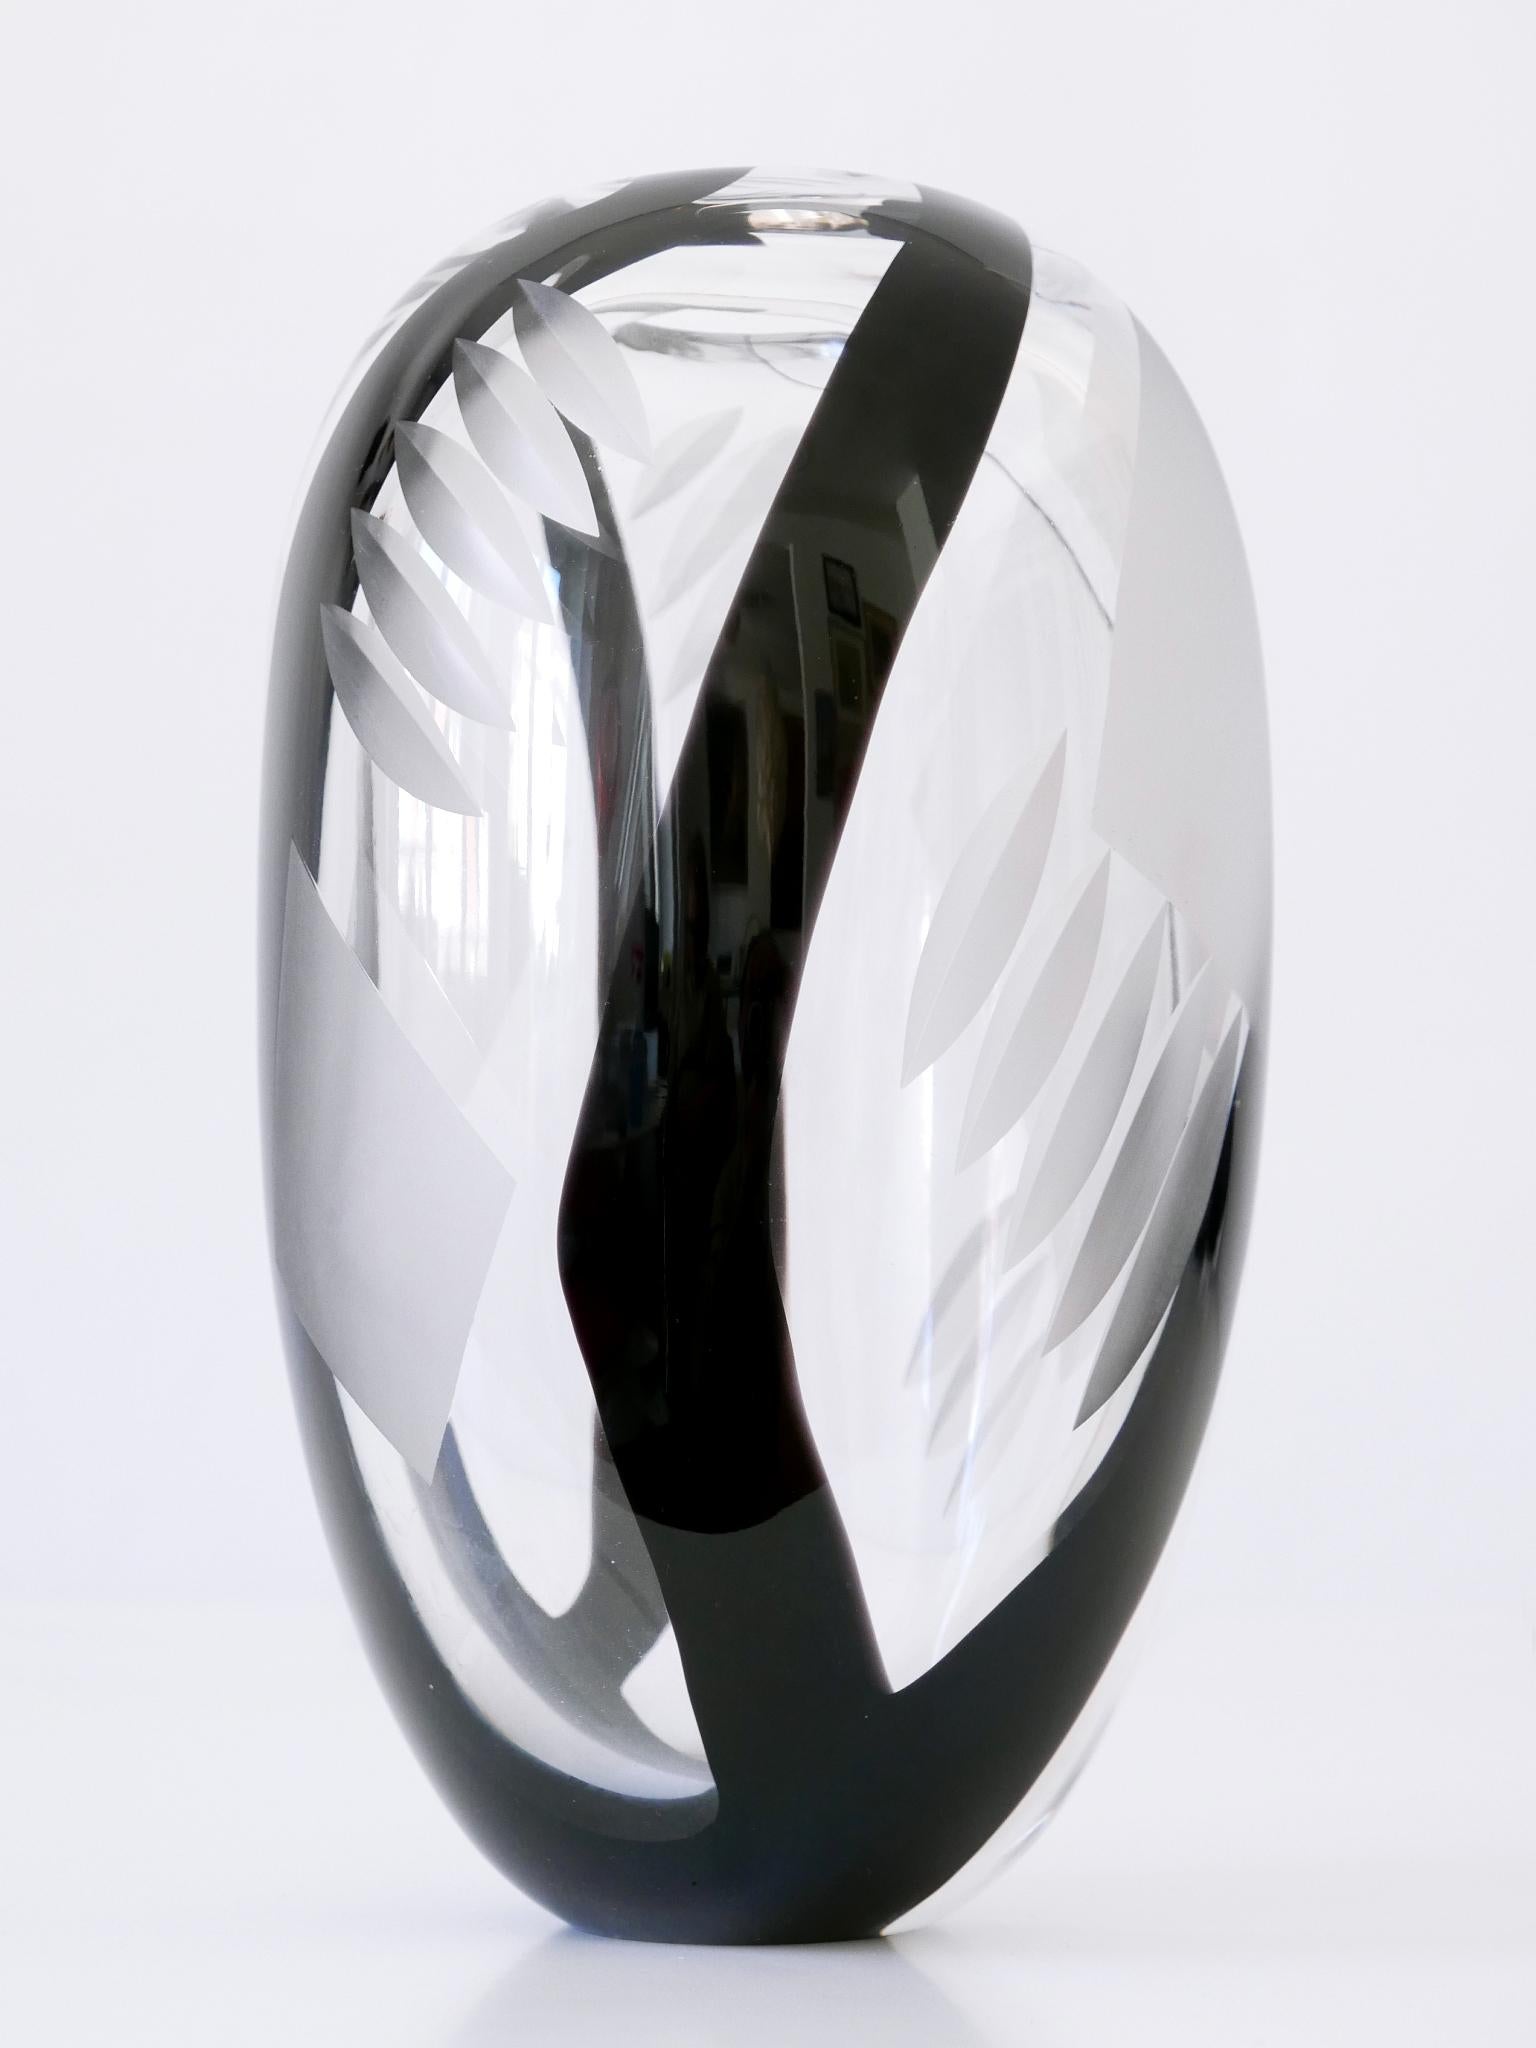 Unique Art Glass Vase by Anna Ehrer for Kosta Boda Sweden 1992 Signed For Sale 8